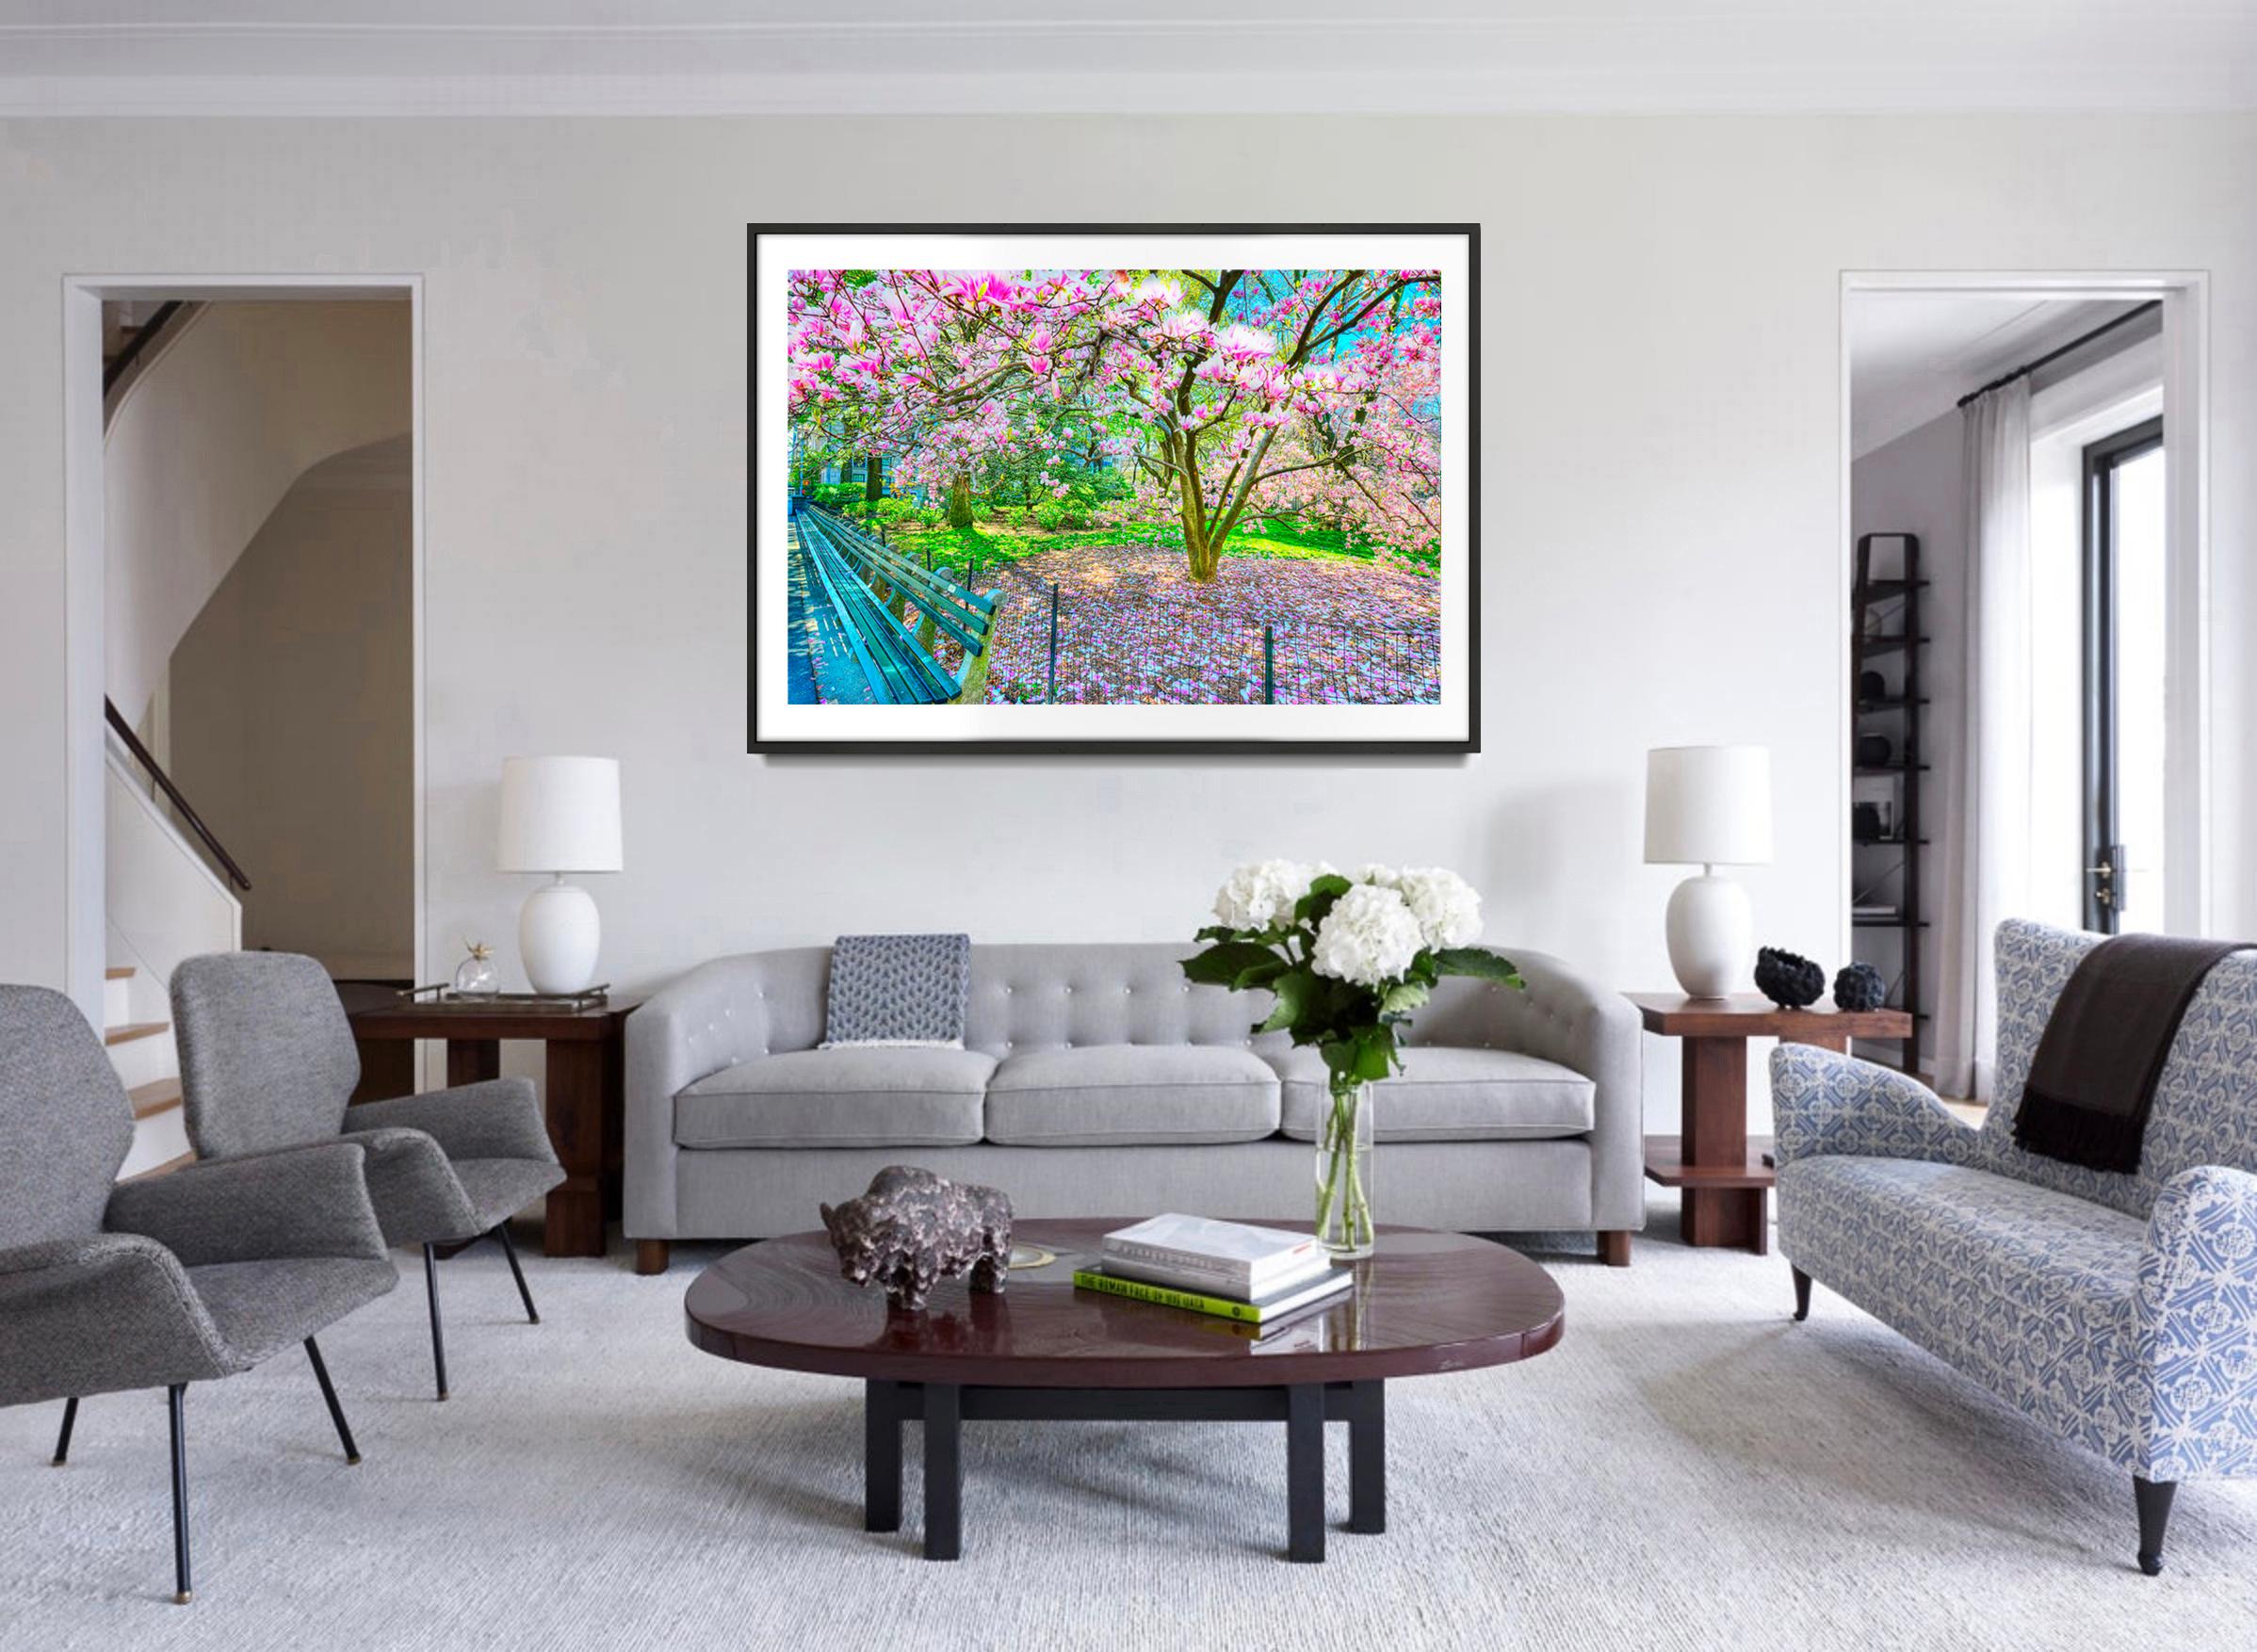 L'arbre en fleurs de Magnolia au printemps, Central Park  New York City en roses et bleus - Post-impressionnisme Photograph par Mitchell Funk